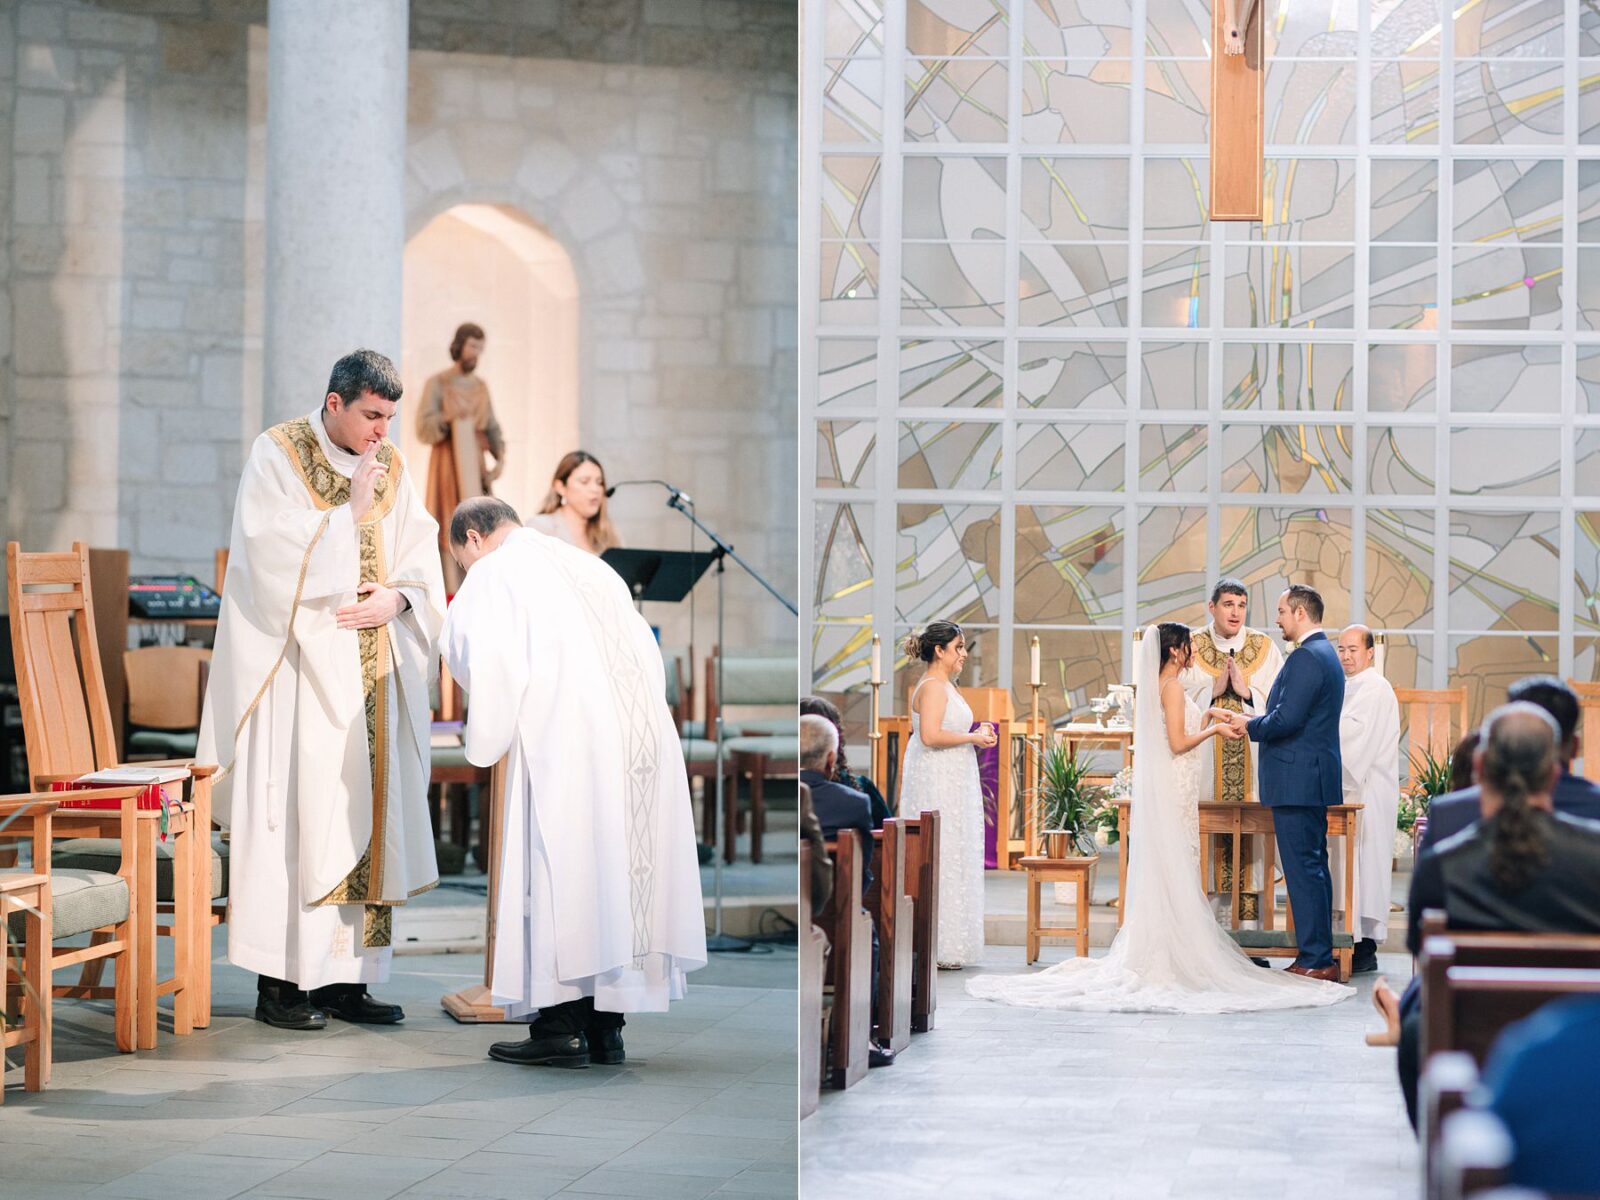 Catholic wedding, catholic mass ceremony, catholic wedding photography tips, photos by Tara Lyons Photography, Austin texas wedding photographer